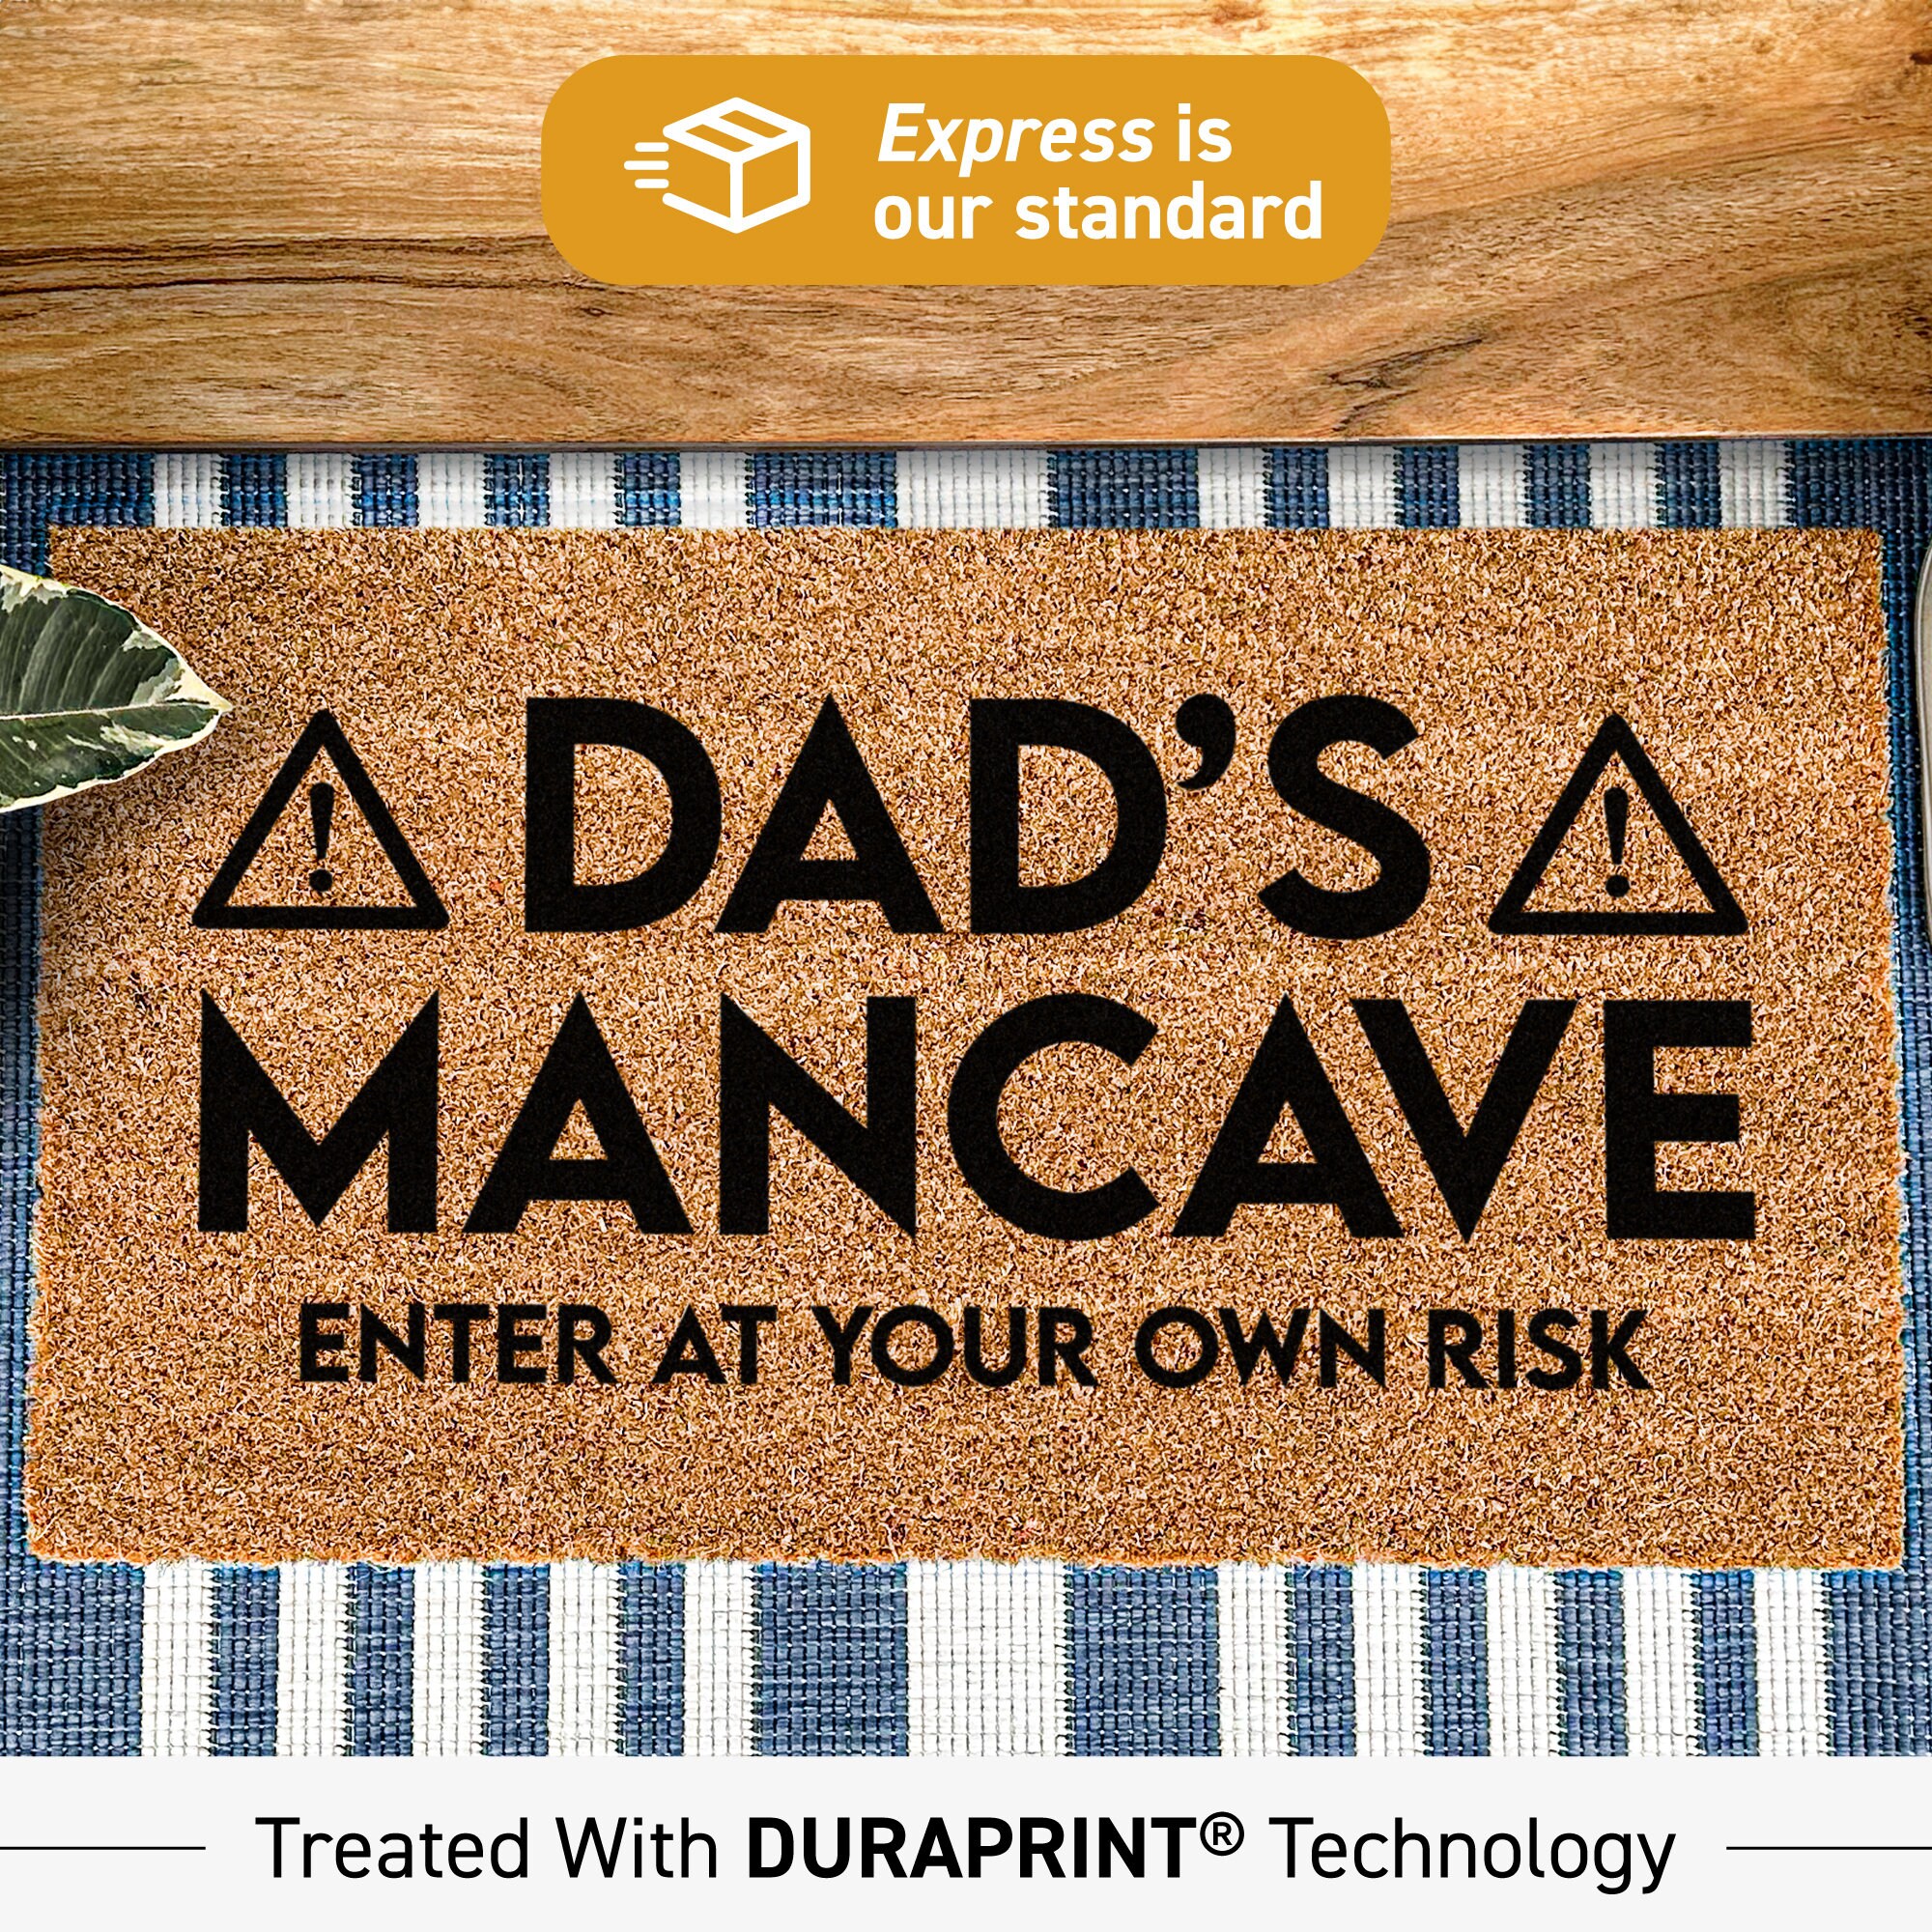 Buy Old Slap Head - Funny Novelty Doormat Man Cave Floor mat Online